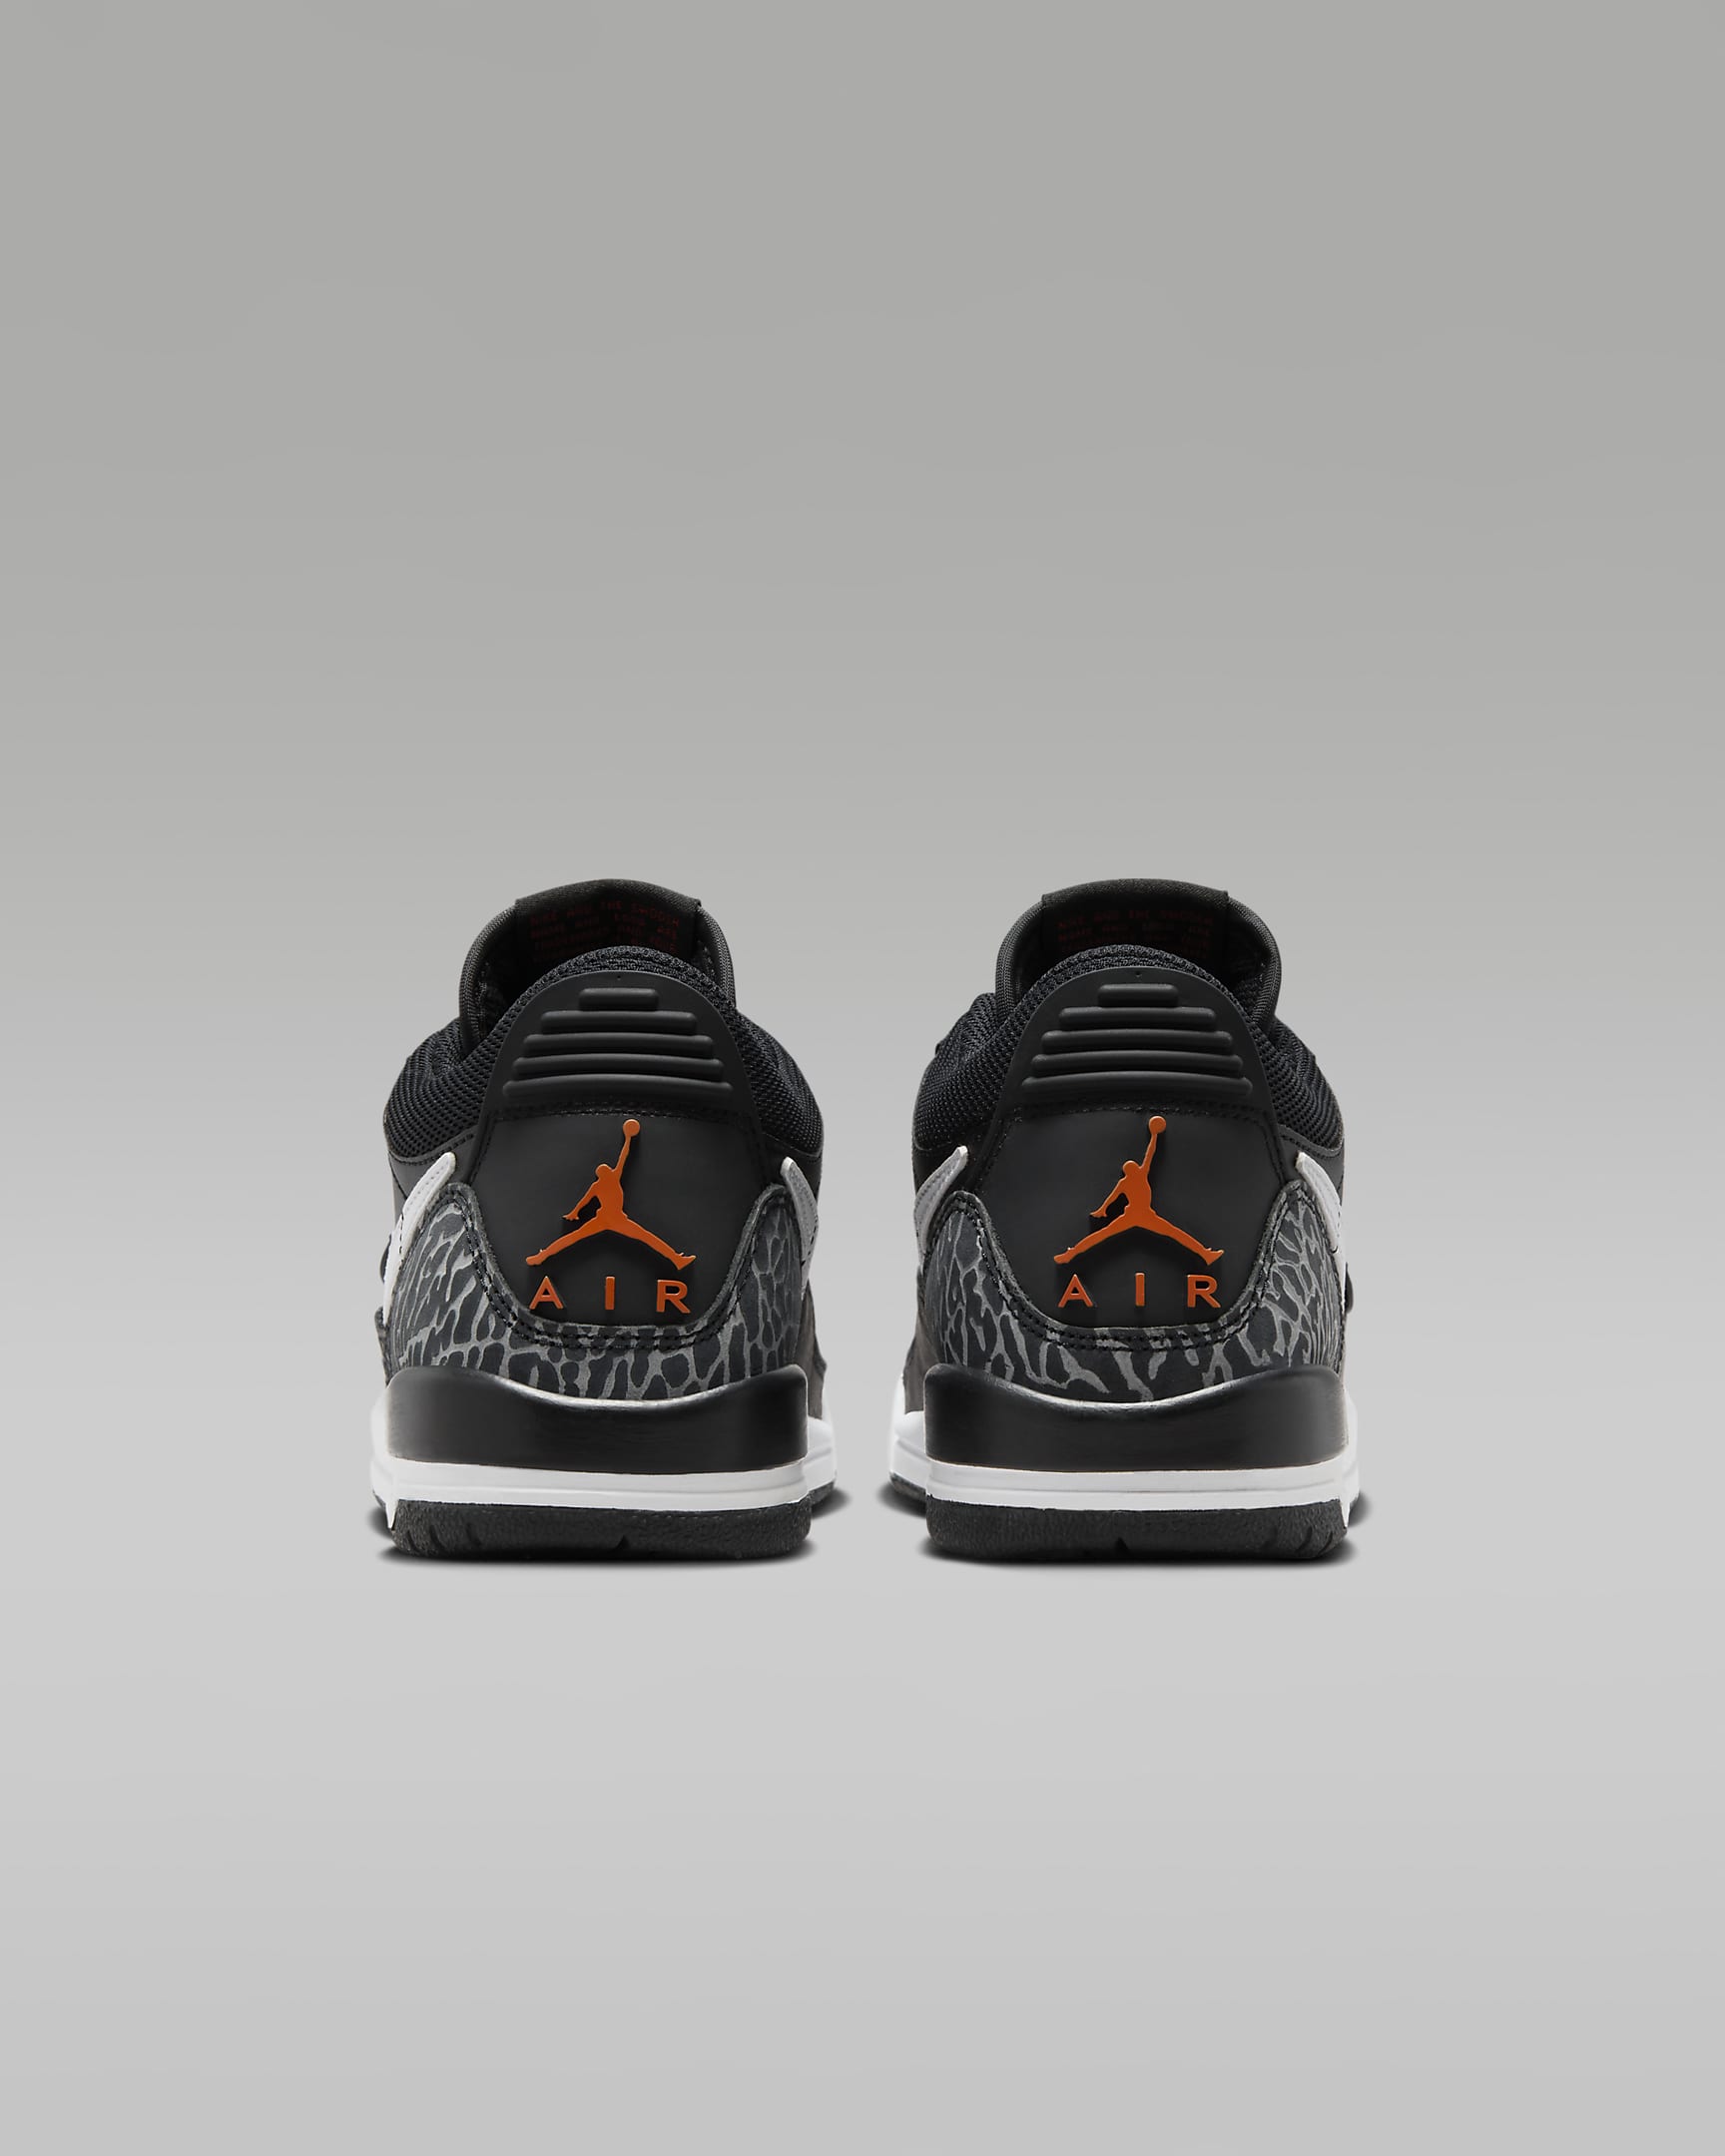 Air Jordan Legacy 312 Low Older Kids' Shoes - Black/Wolf Grey/Safety Orange/White